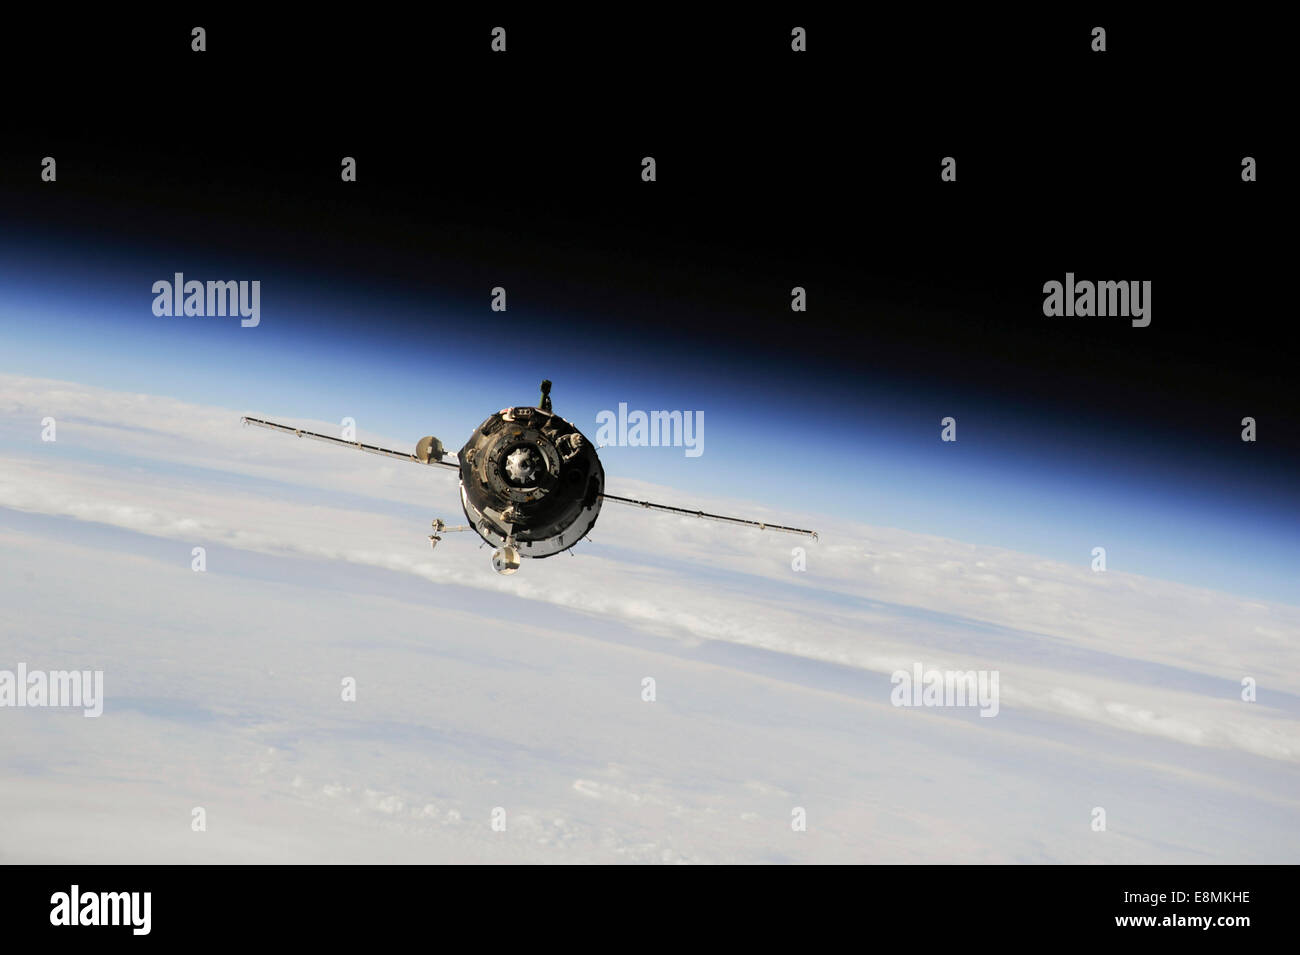 25 septembre 2013 - Le vaisseau Soyouz TMA-10M les vaisseaux spatiaux en orbite au-dessus de la Terre. Banque D'Images